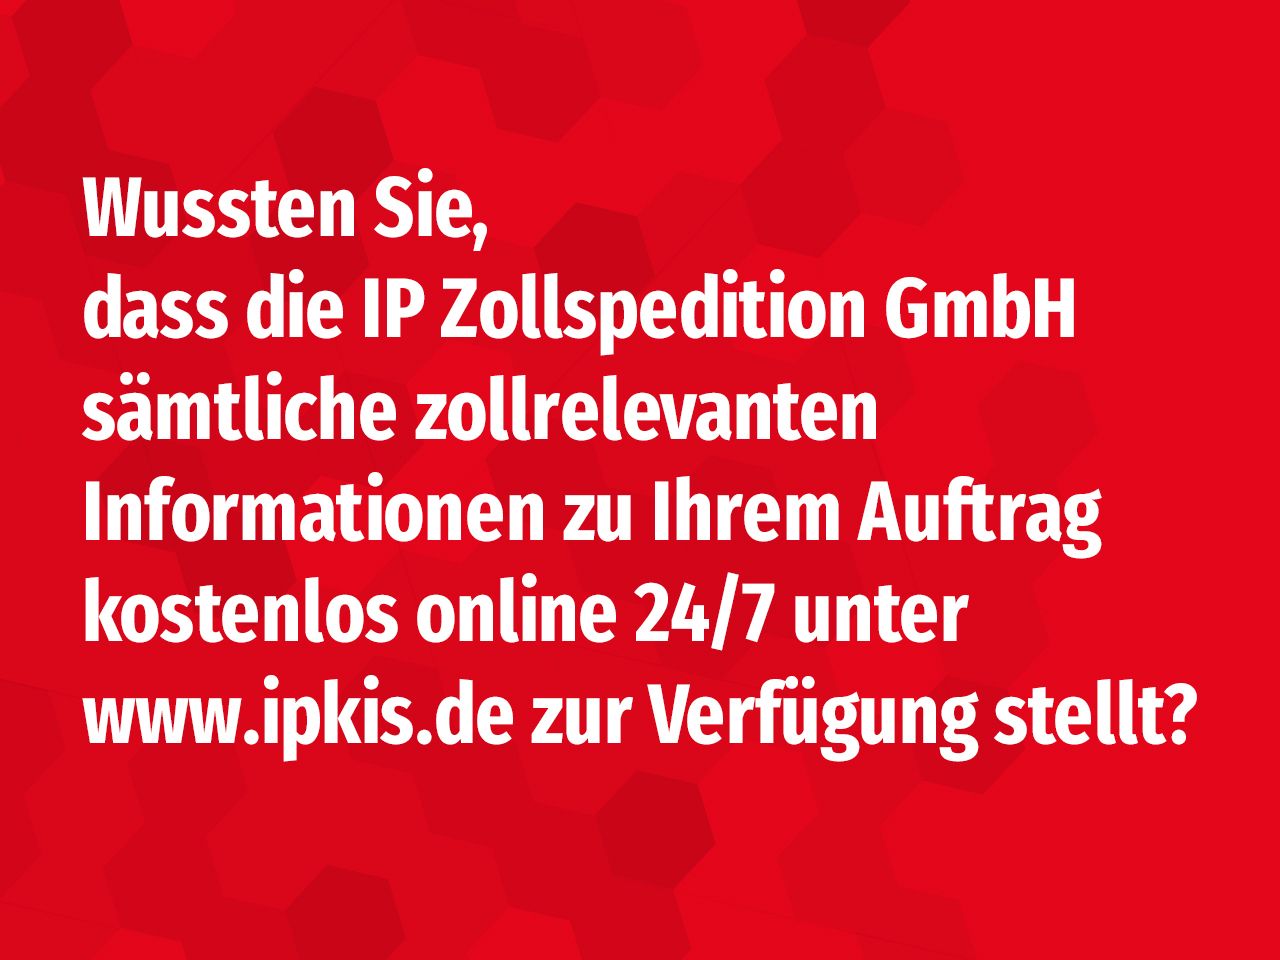 Wussten Sie, dass die IP Zollspedition GmbH sämtliche zollrelevanten Informationen zu Ihrem Auftrag kostenlos online 24/7 unter www.ipkis.de bereitstellt?